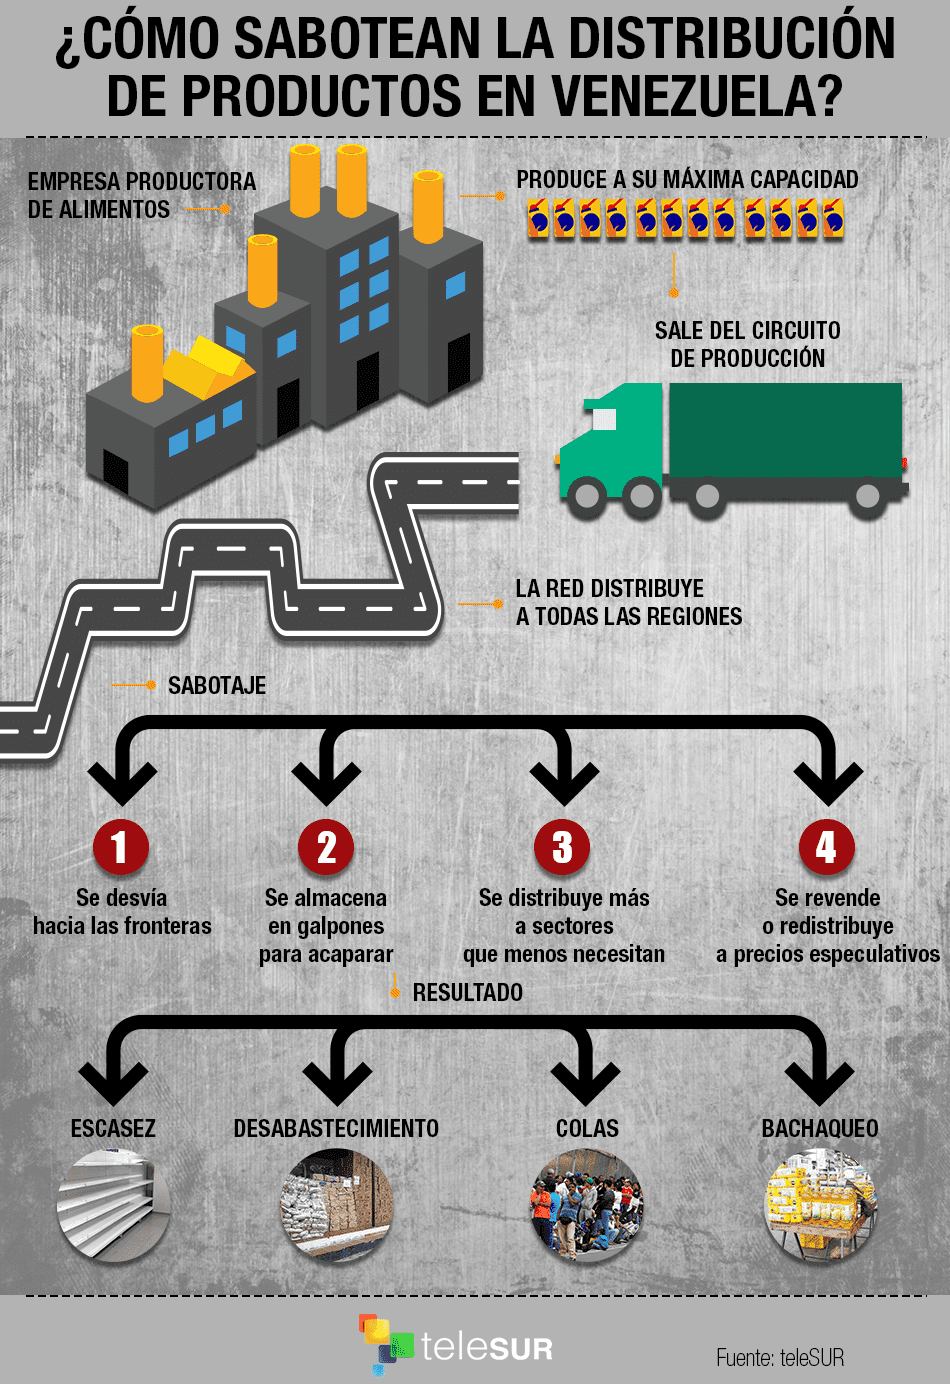 ¿Cómo sabotean la distribución de productos en Venezuela?